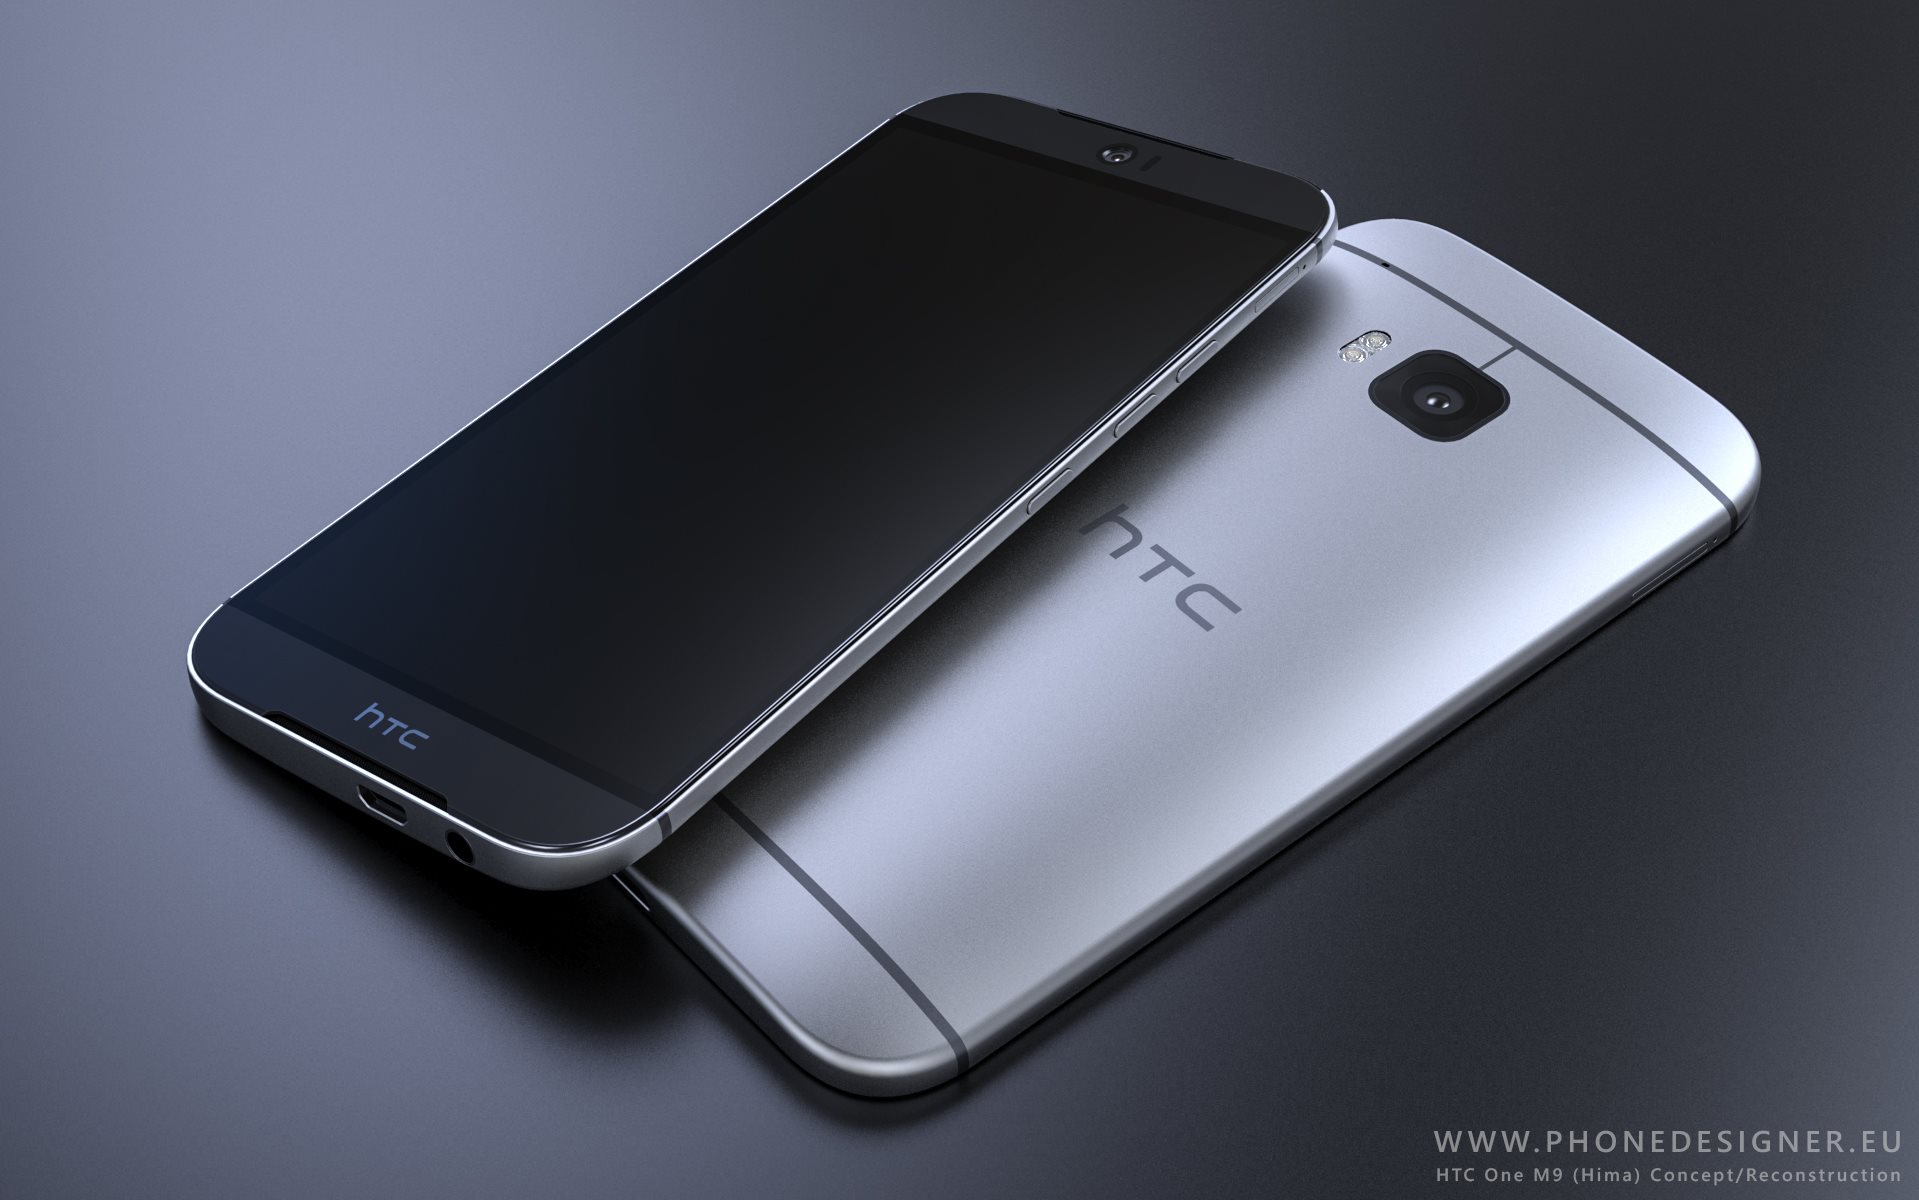 Thiết kế kim loại nguyên khối luôn là điểm mạnh của dòng smartphone hot nhất HTC One 